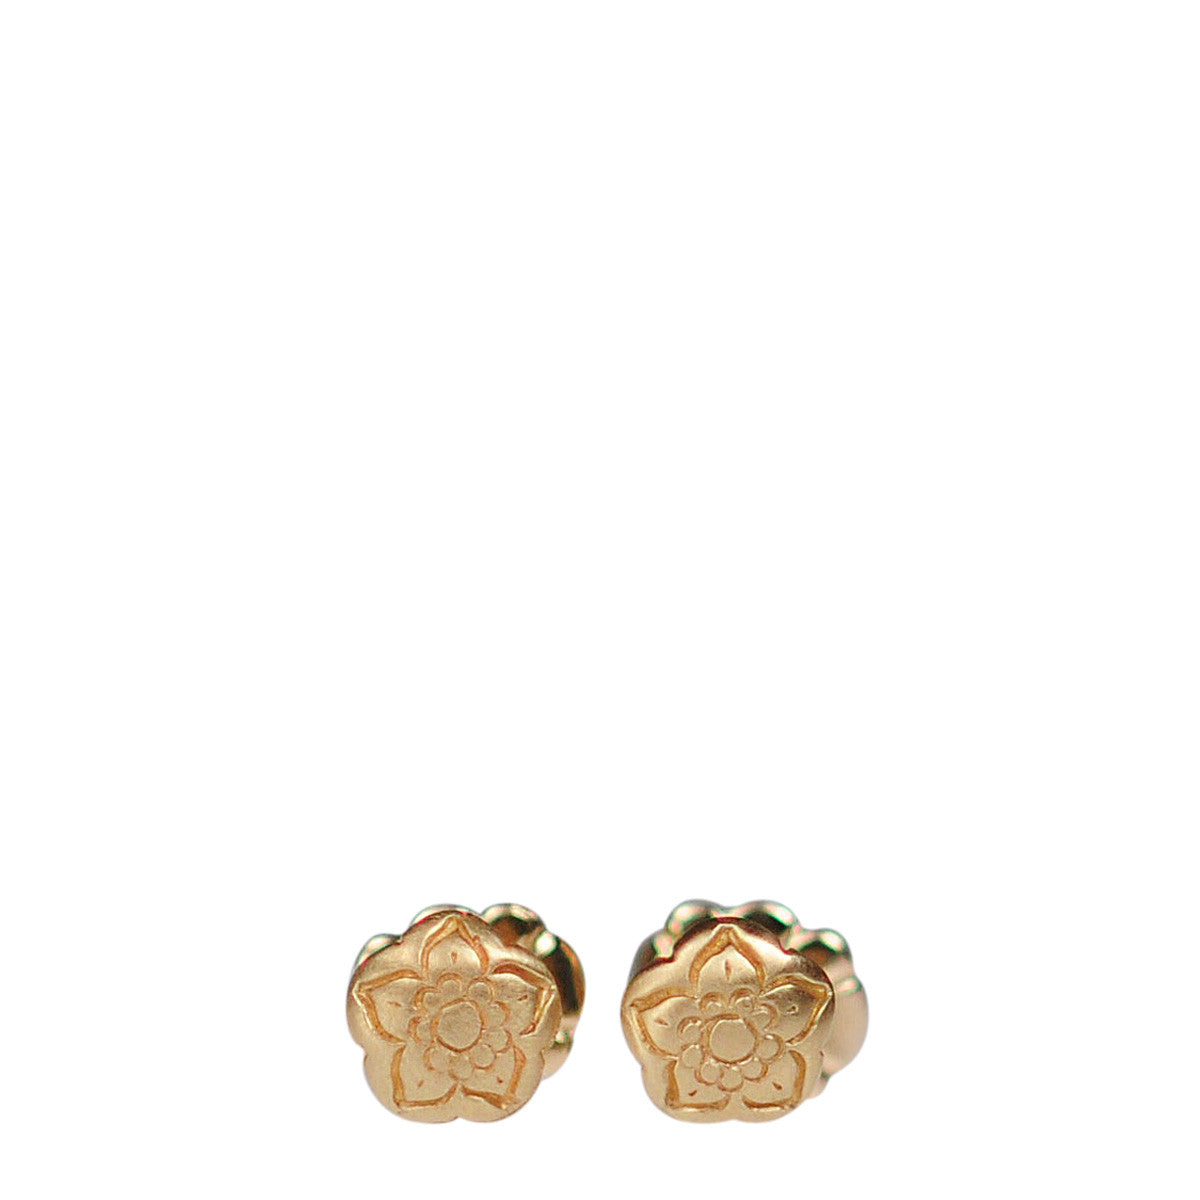 10K Gold Tiny Flower Stud Earrings